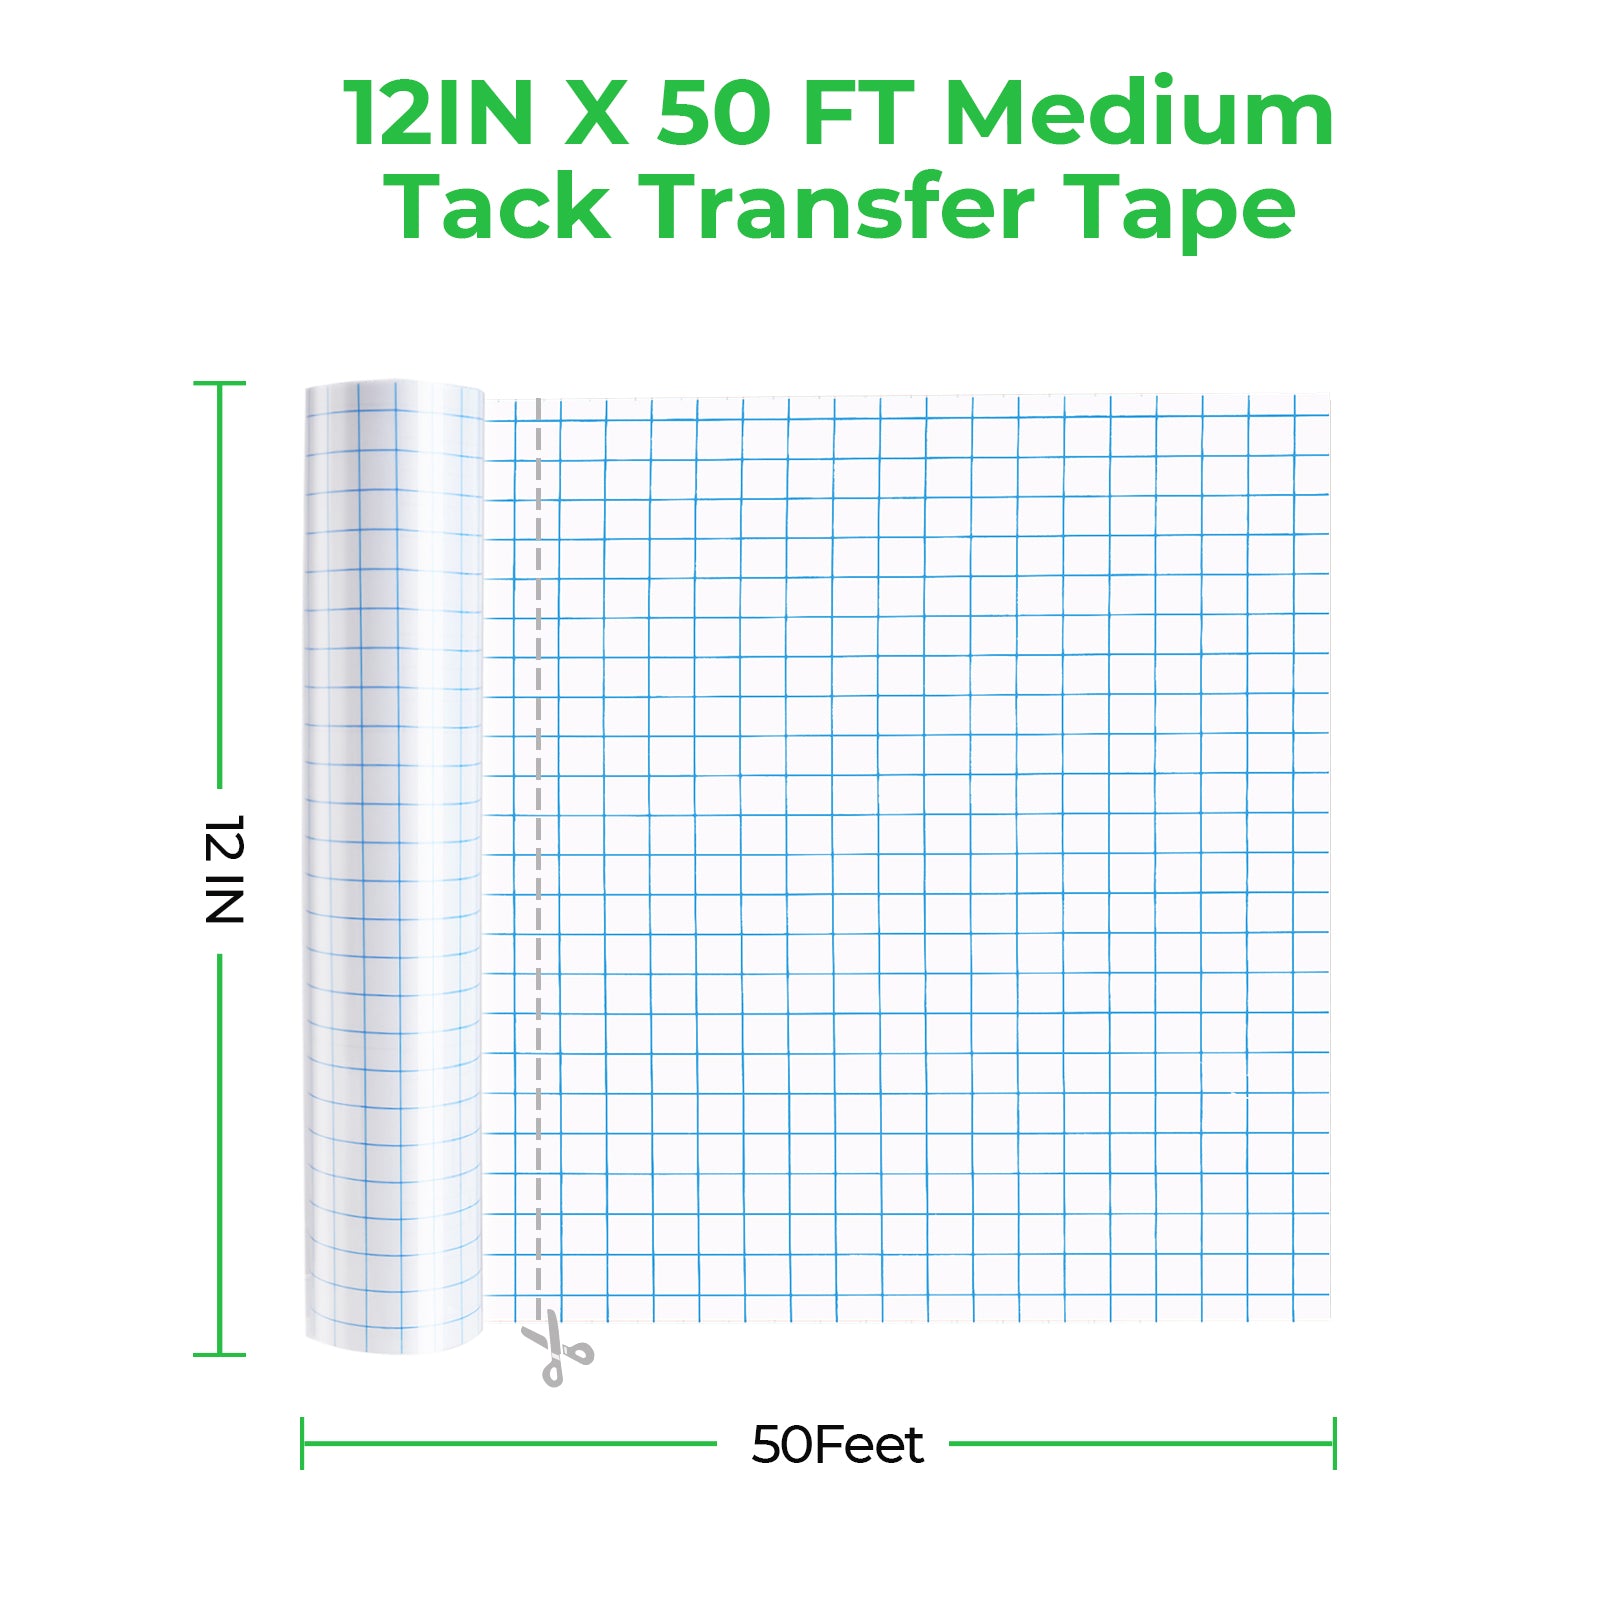 50FT Medium Tack Transfer Tape